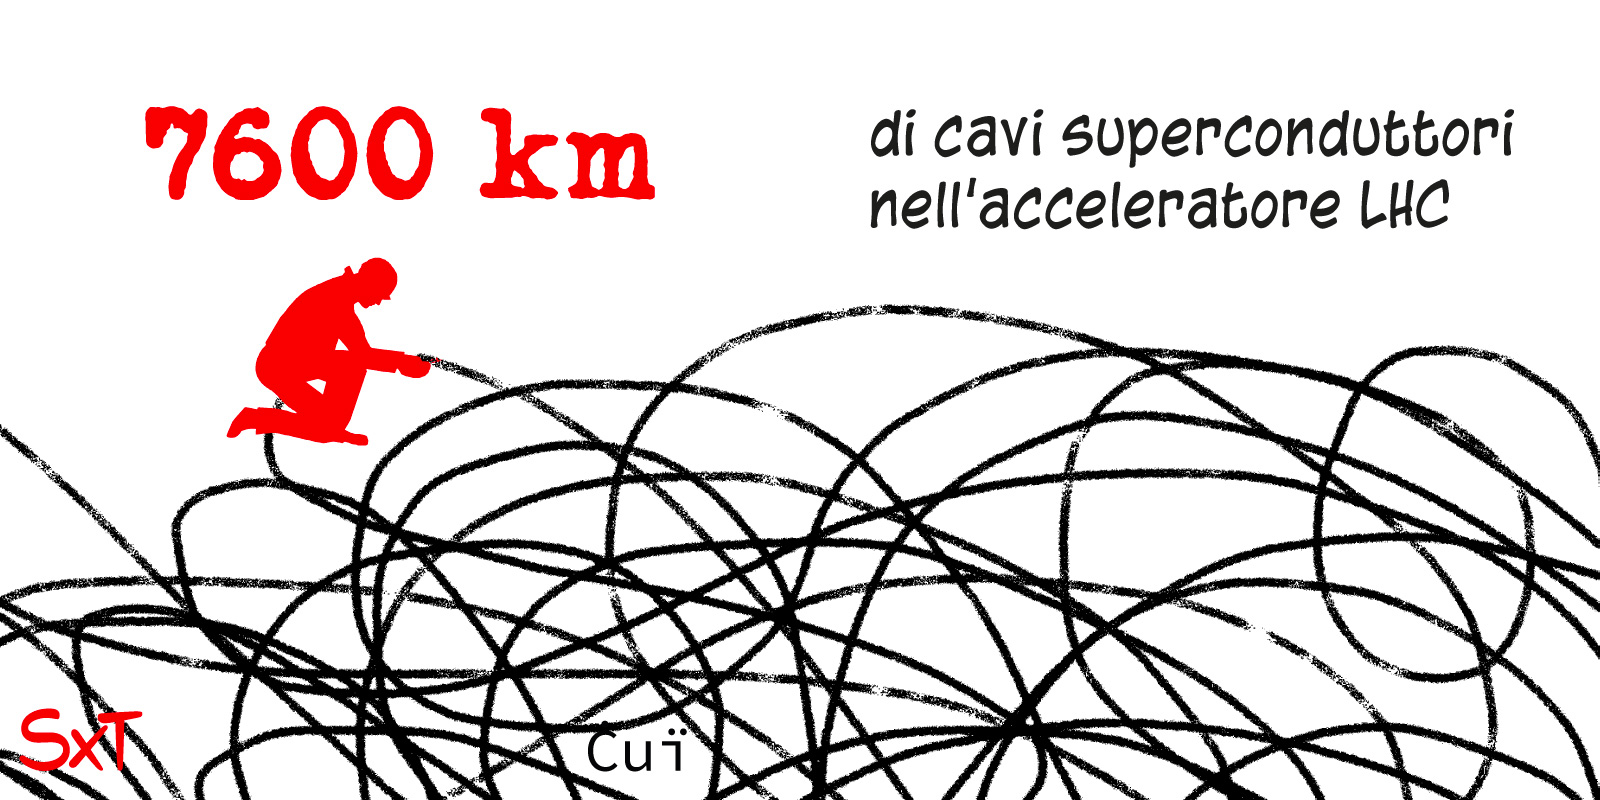 7600 km di cavi superconduttori